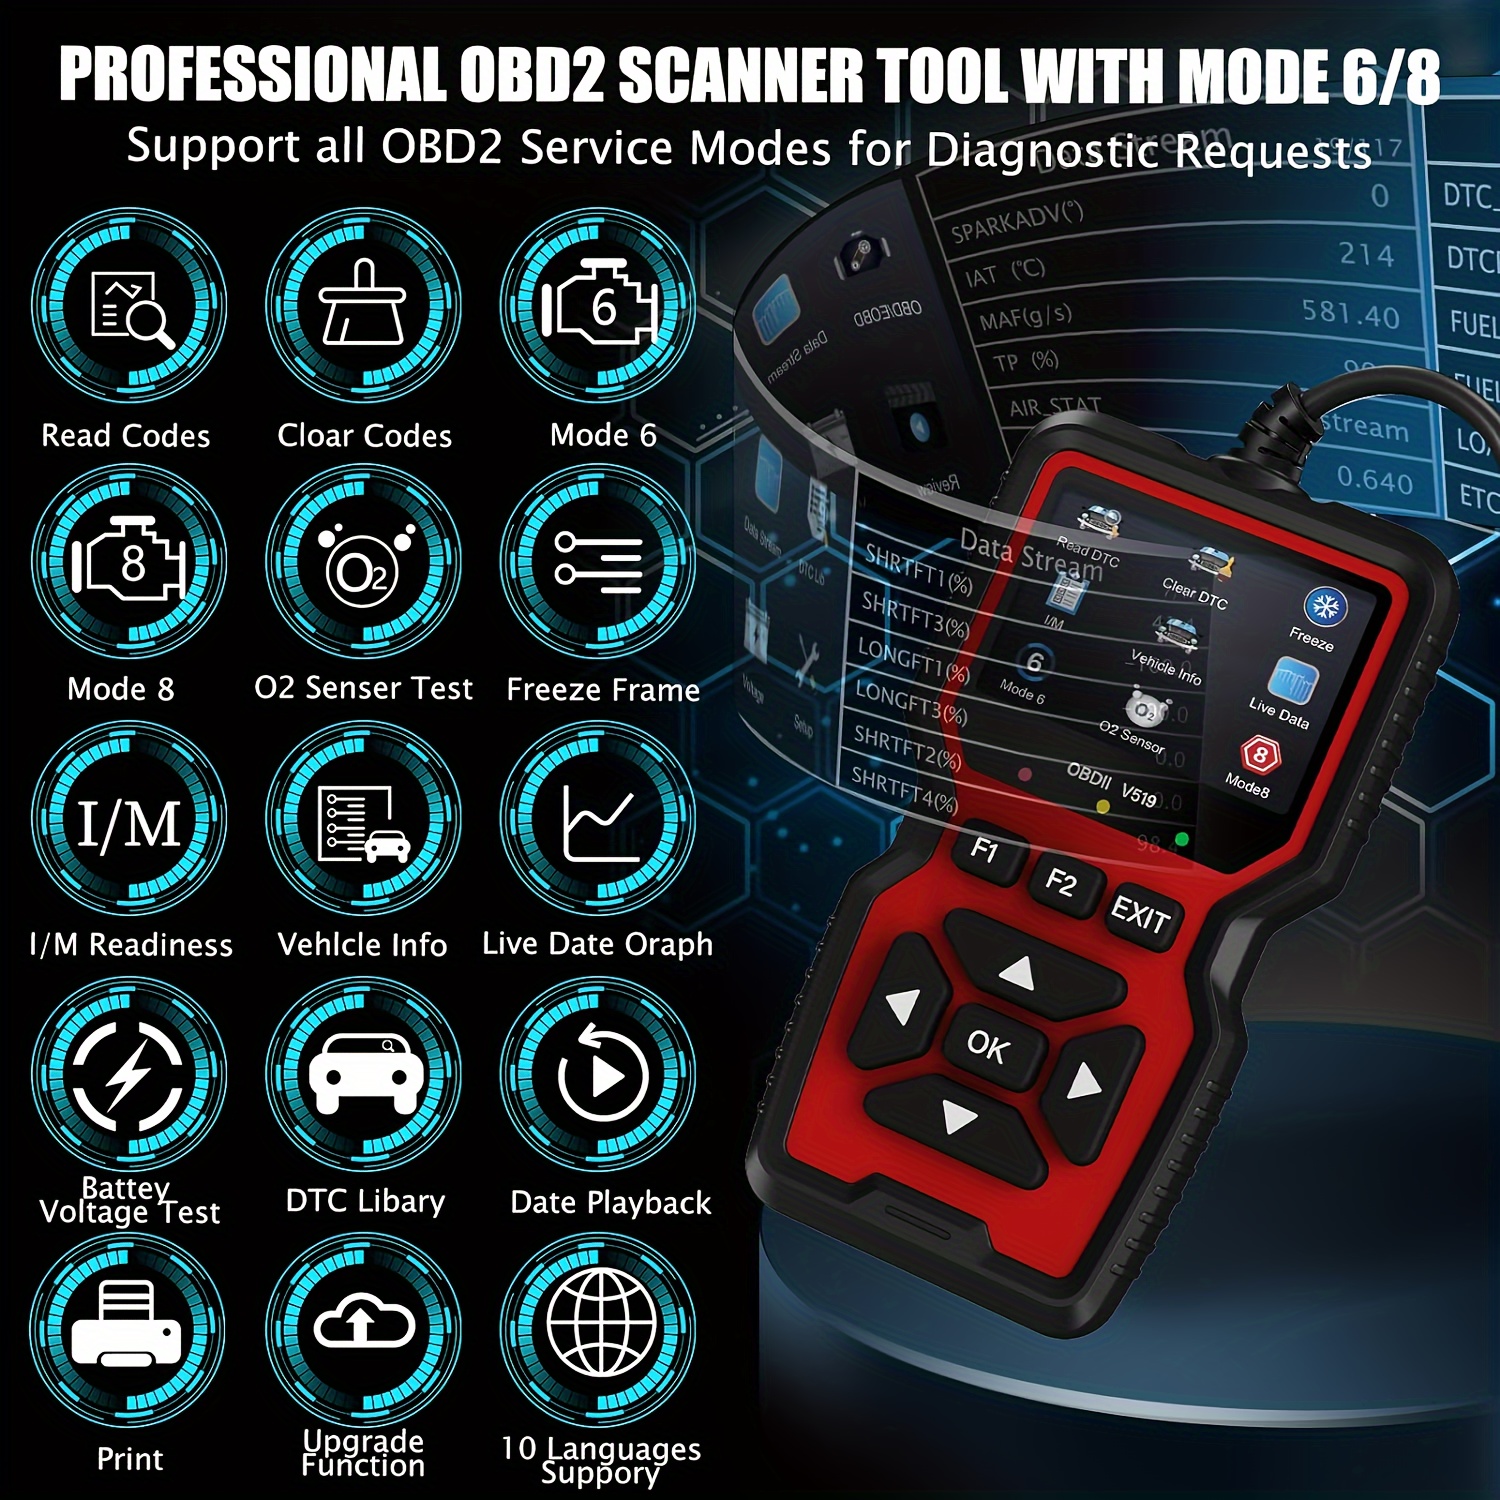 Détecteur de défauts de voiture V519 Obd2 Scanner Diagnostic de défaut  Testeur Multi Language Engine System Diagnostic Tool Code Reader